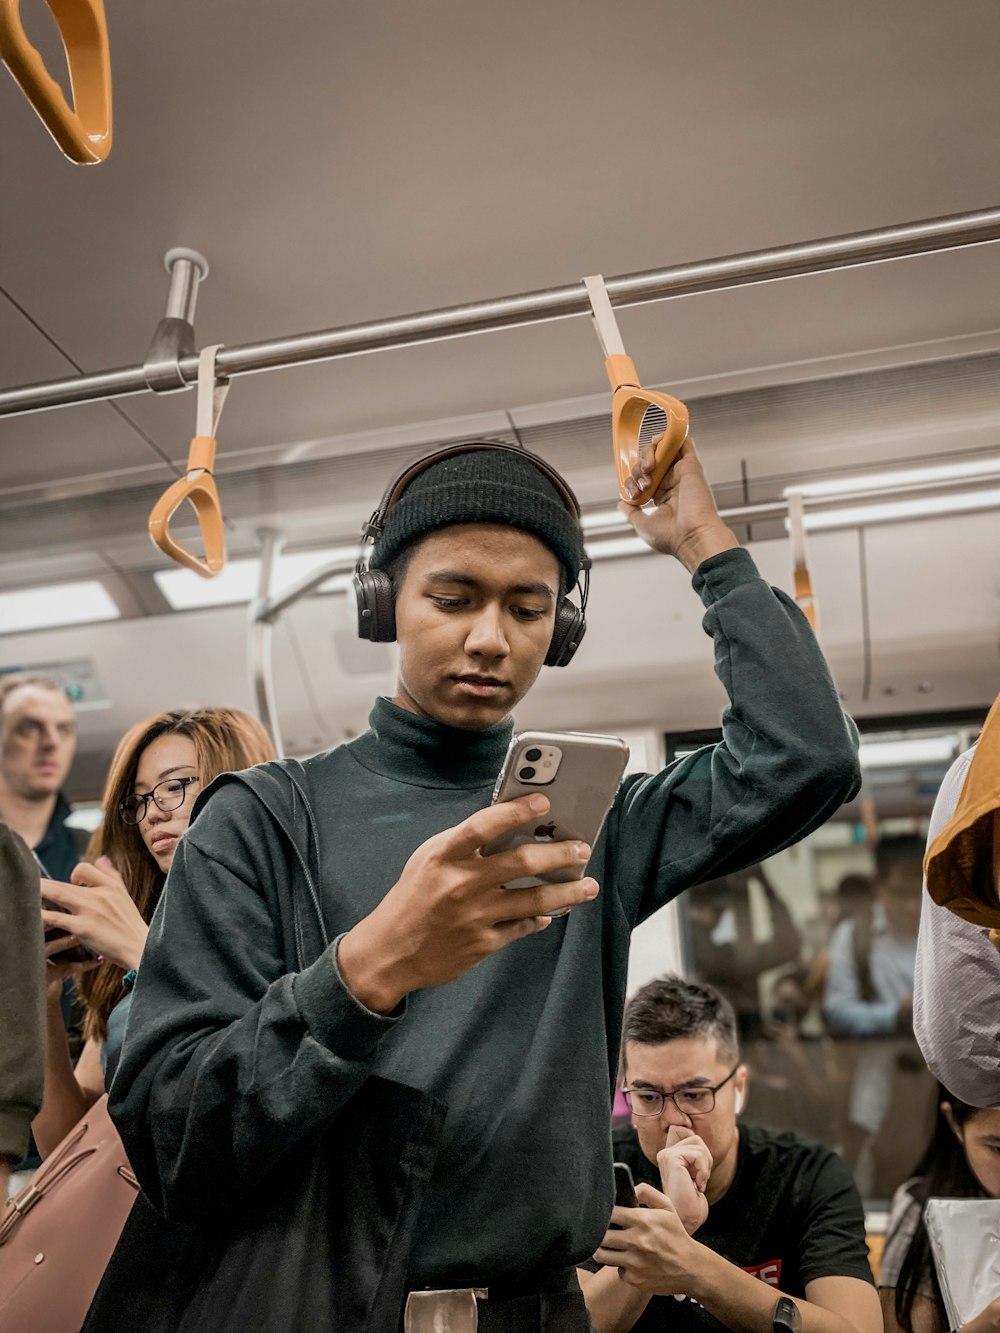 Hombre en el tren sosteniendo un teléfono inteligente